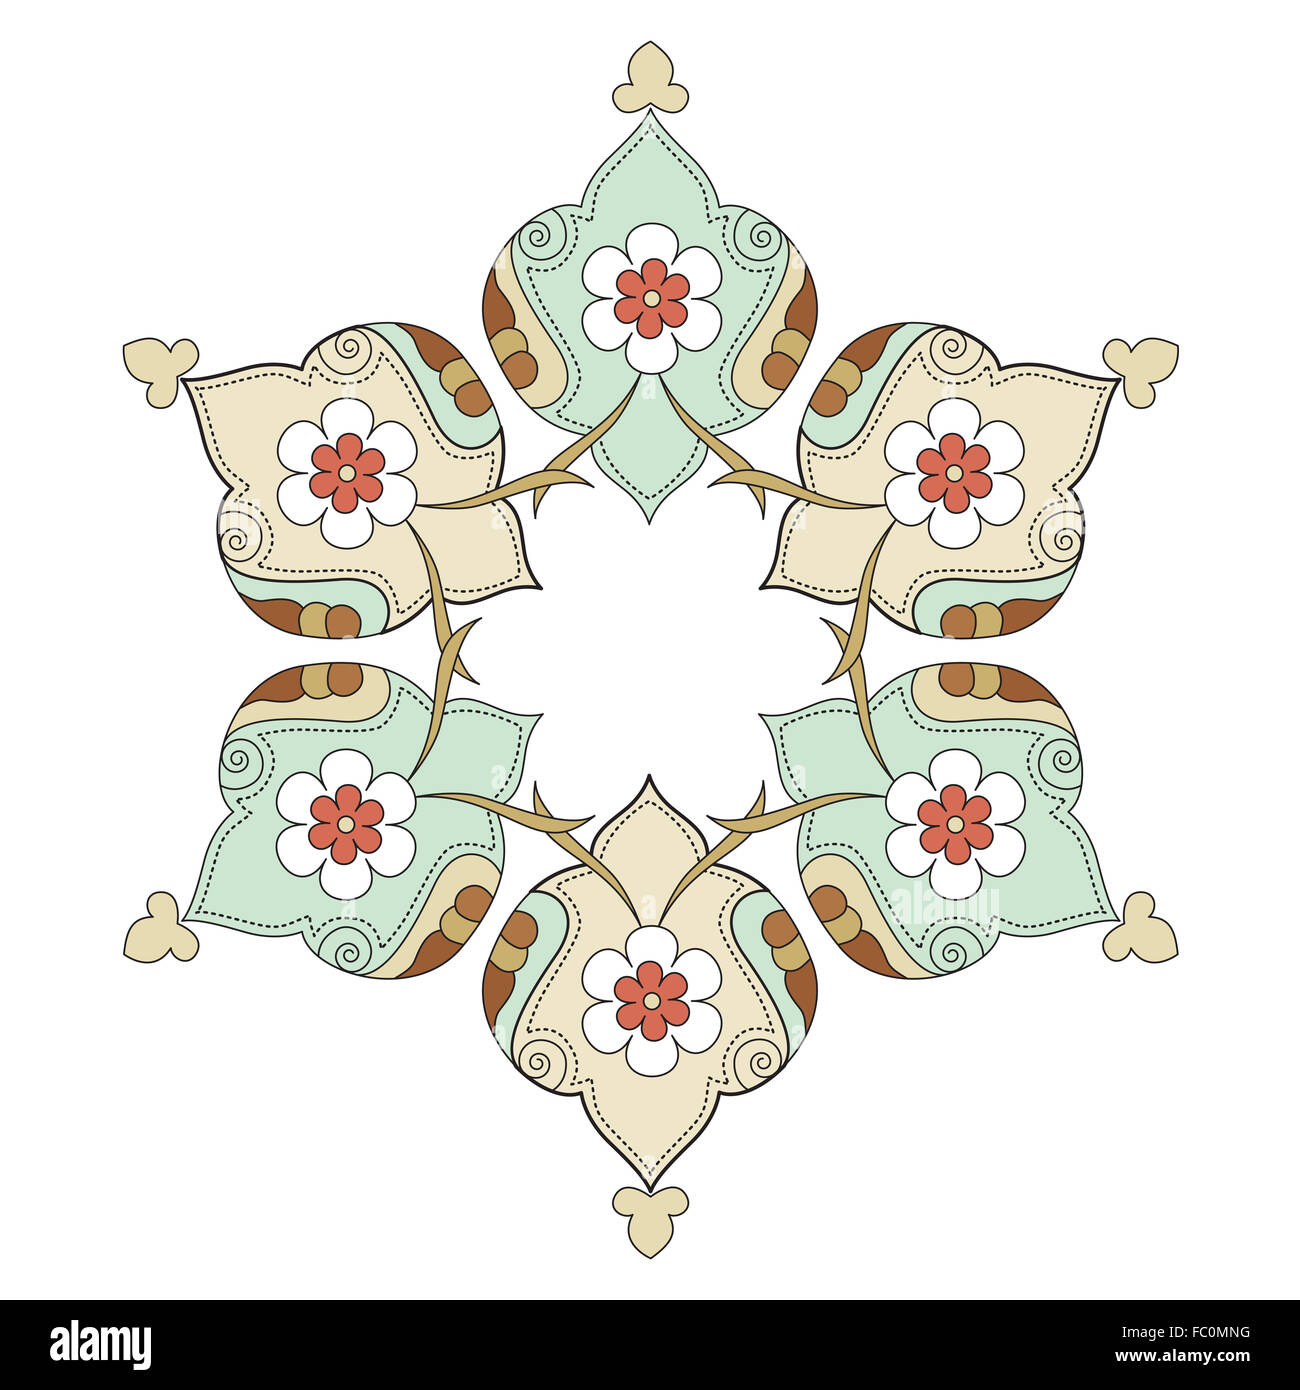 artistic ottoman pattern series eight Stock Photo